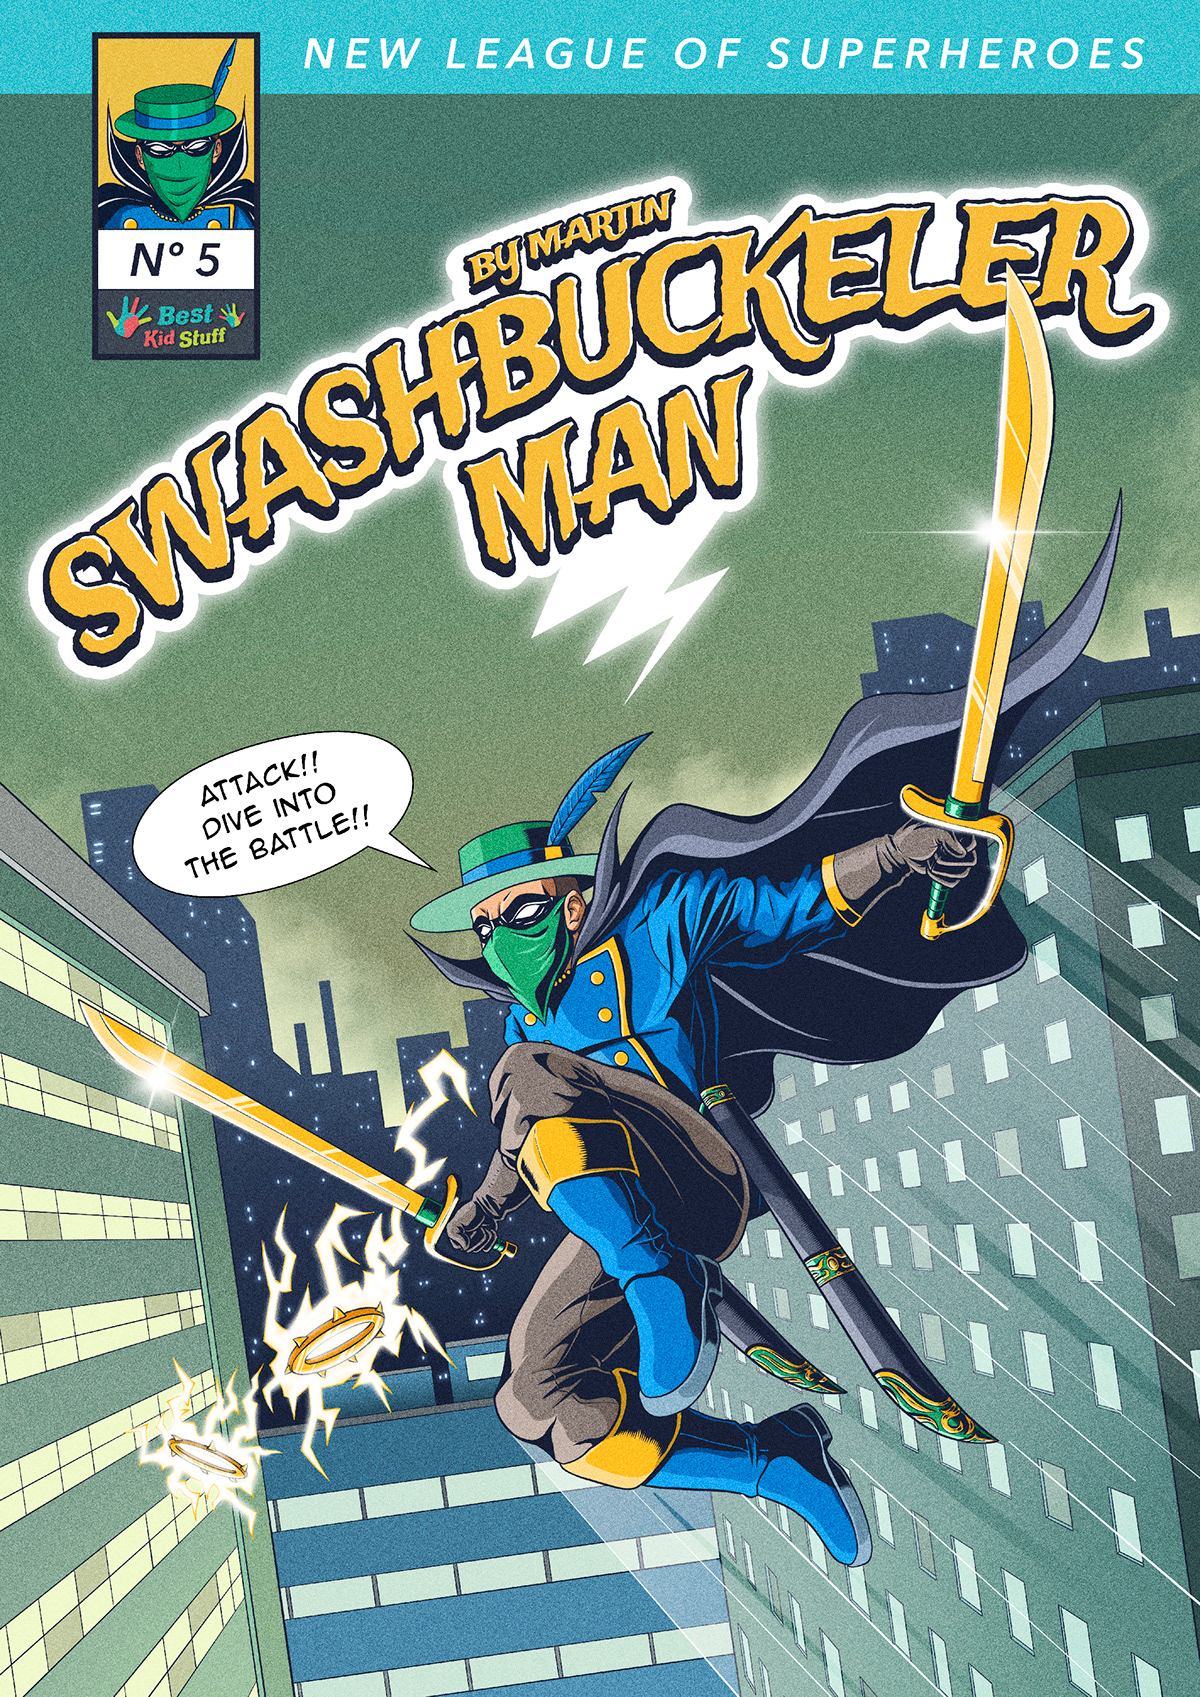 Character comic cover dc heroe loor marvel poster superheroe superpower